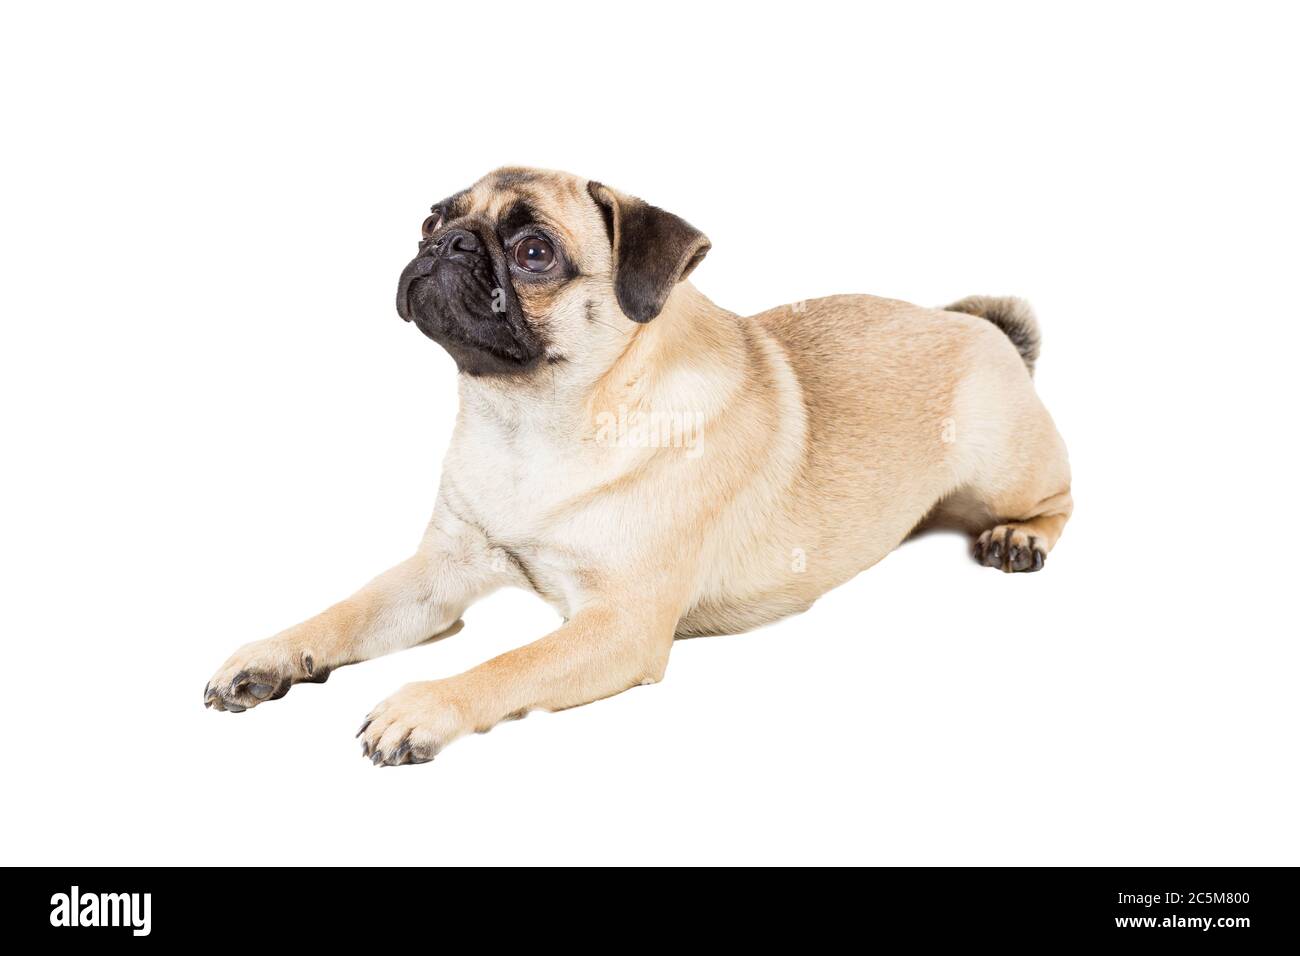 Pug dog isolated on white background Stock Photo - Alamy